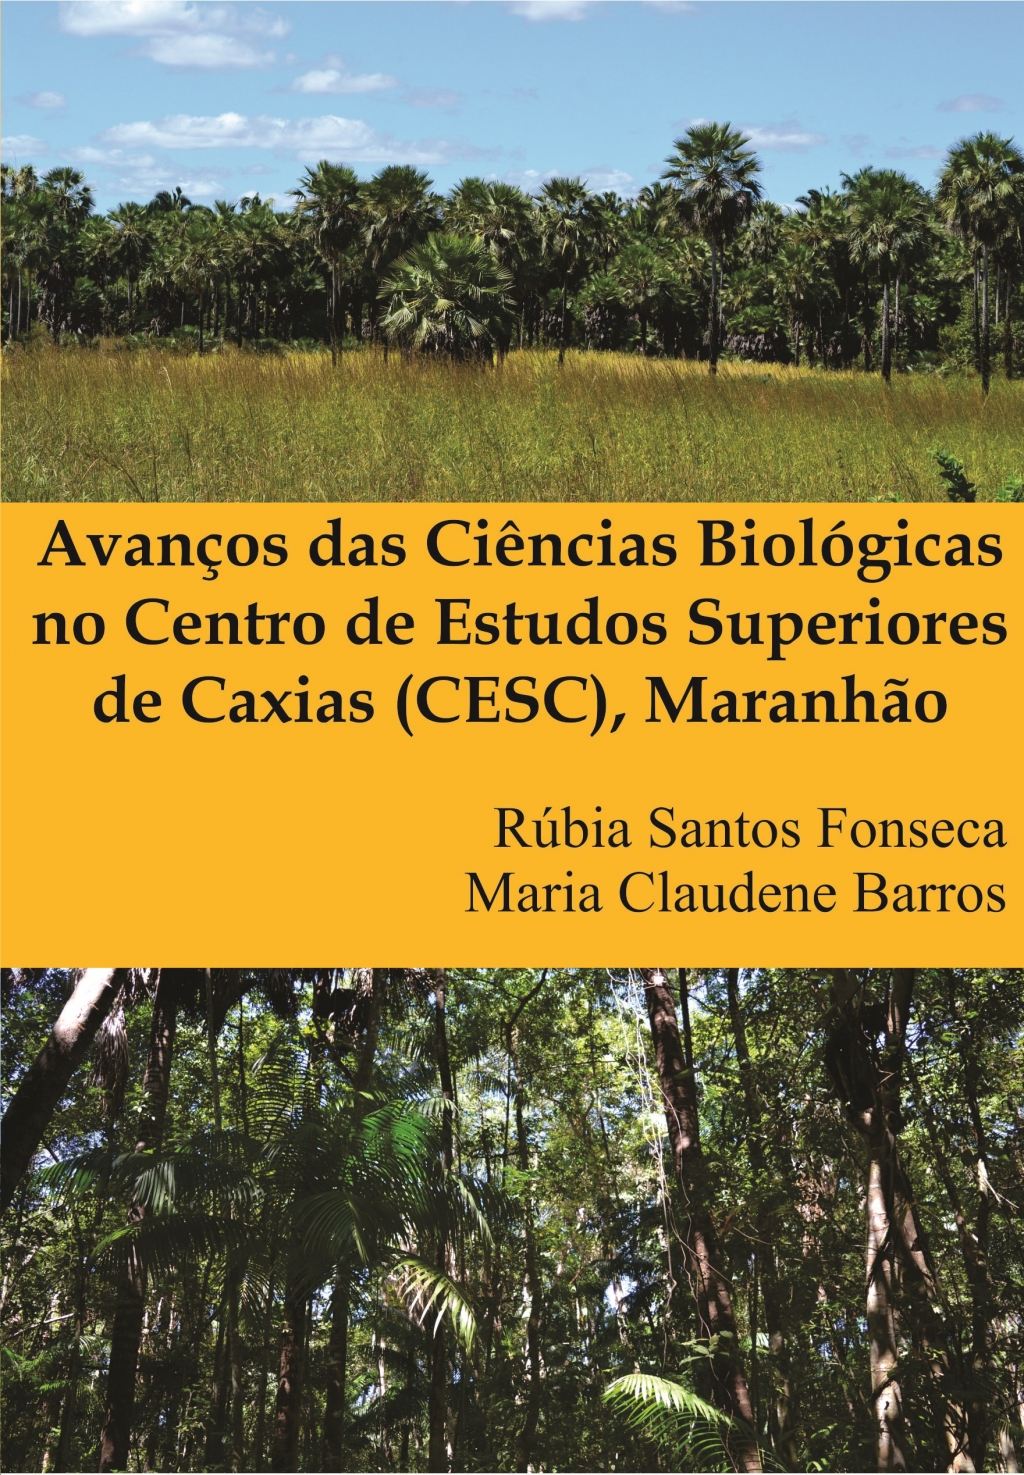 AVANÇOS DAS CIÊNCIAS BIOLÓGICAS NO CENTRO DE ESTUDOS SUPERIORES DE CAXIAS (CESC), MARANHÃO